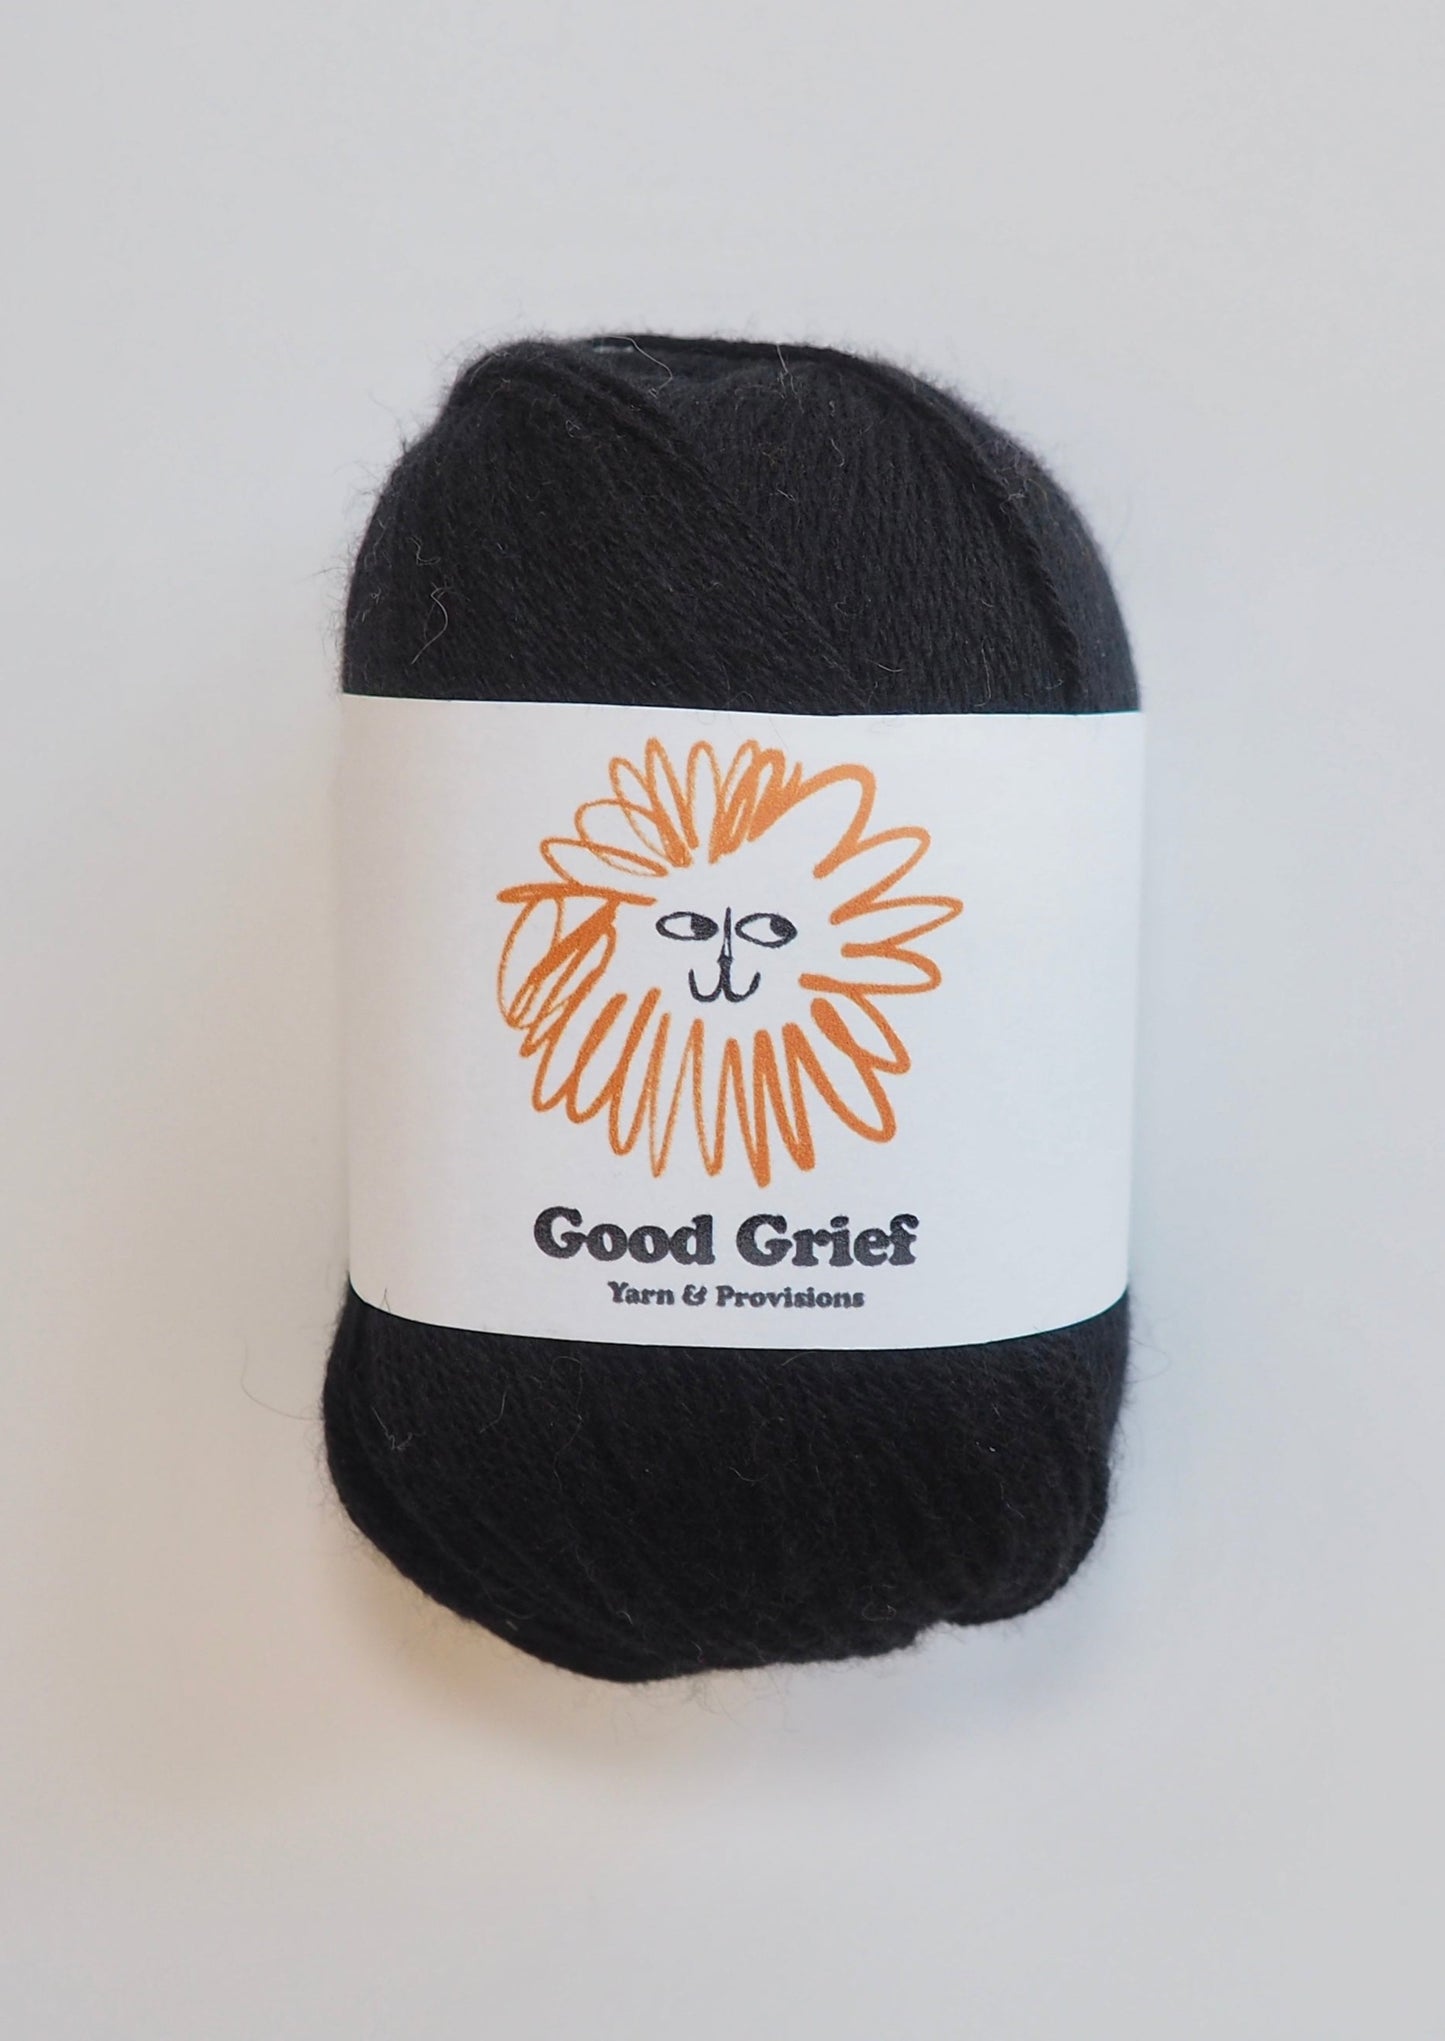 Importaciones de Good Grief: hilo de cachemira